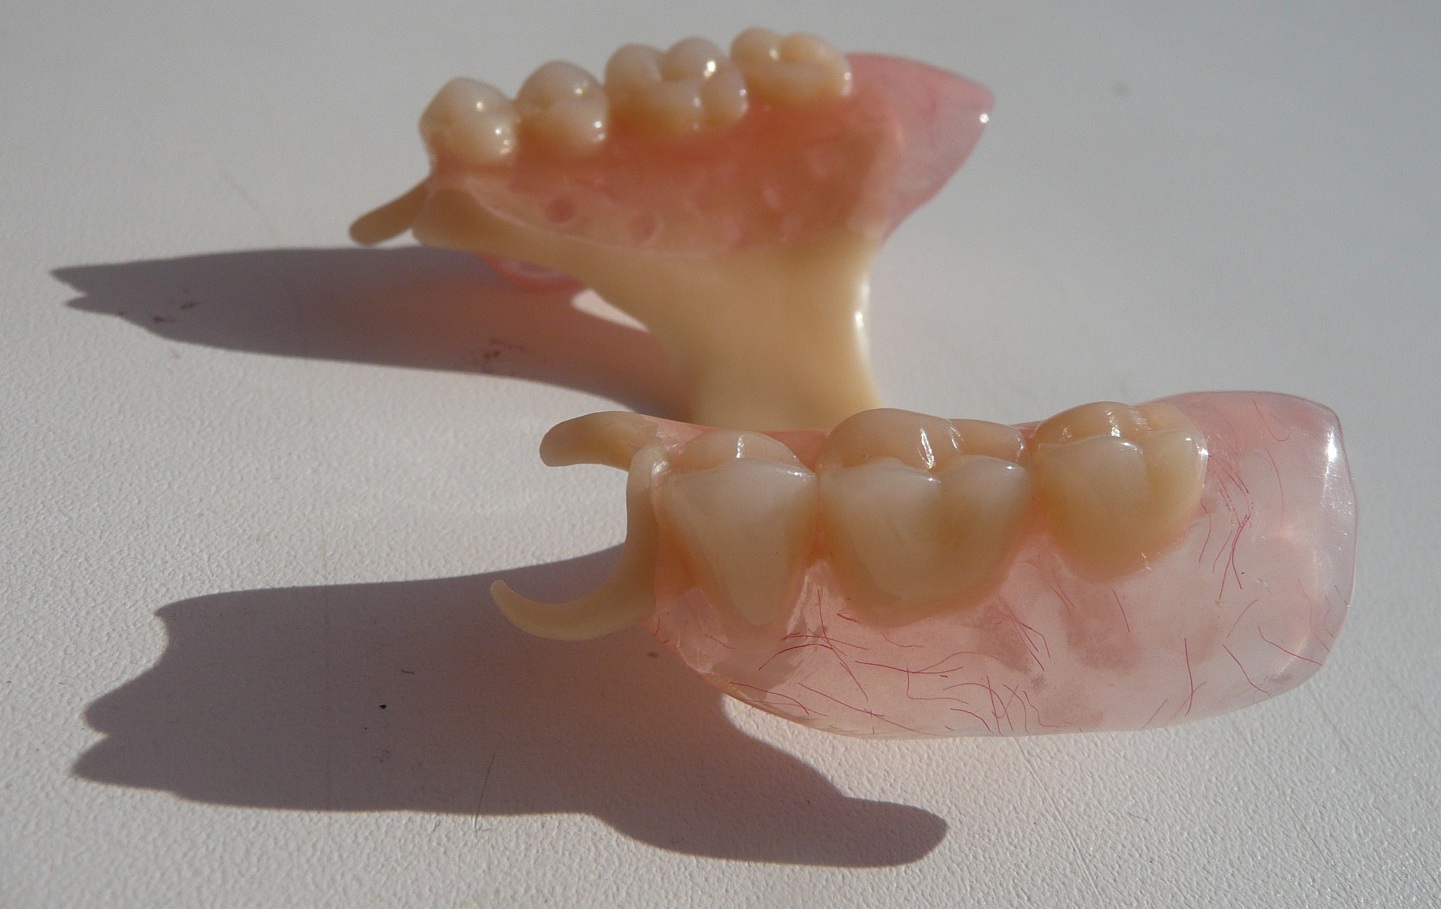 Виды съемных зубных протезов и уход за ними